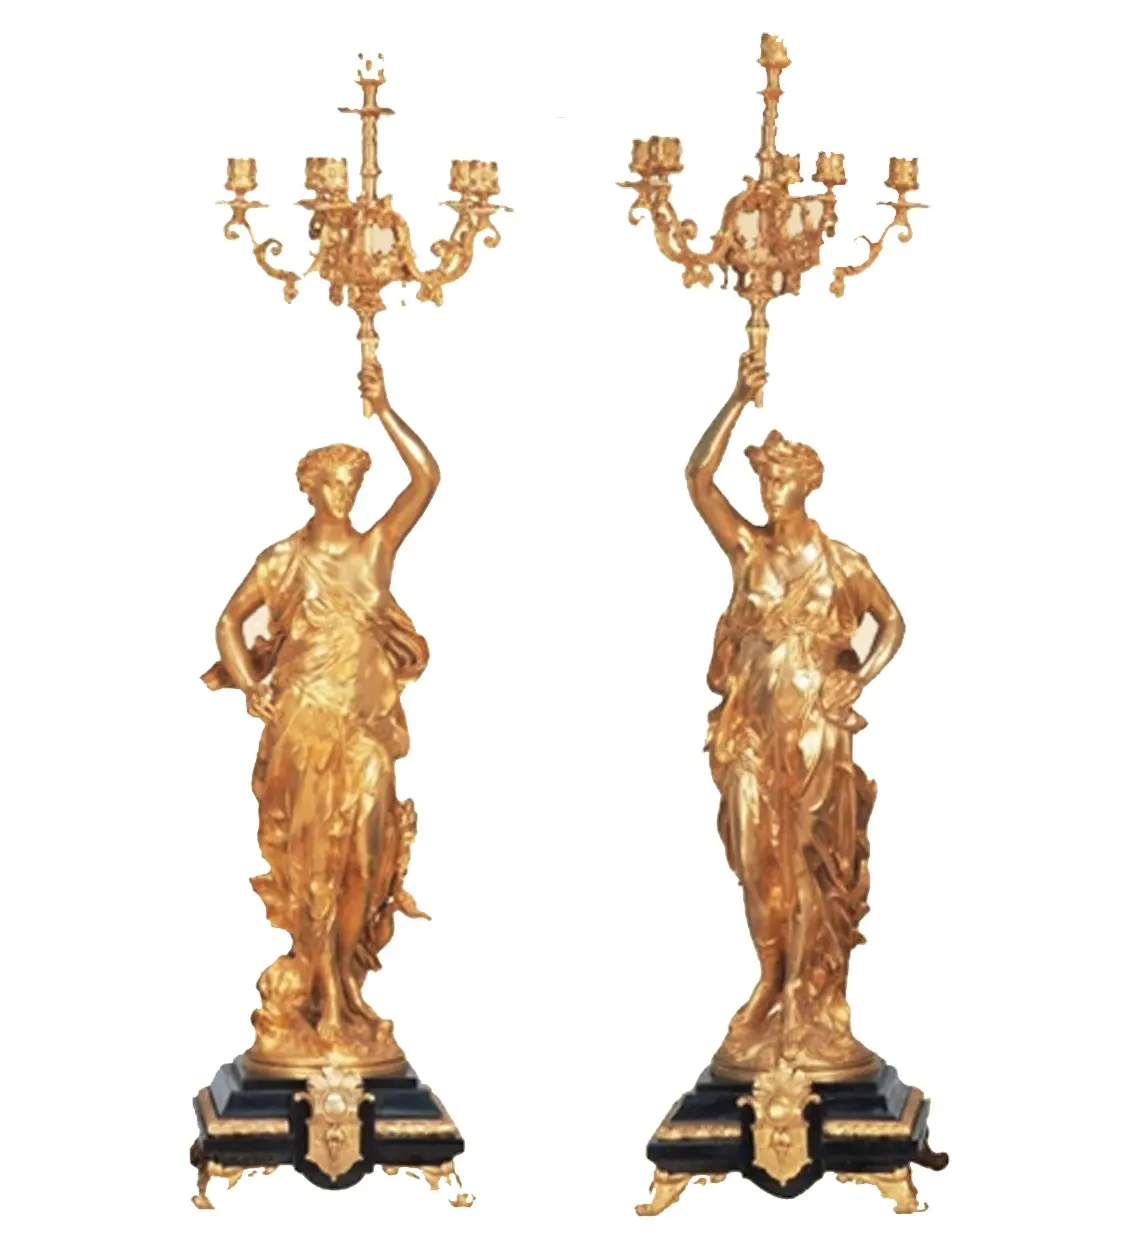 Antico paio di dorati in ottone massiccio fuso "guerriero" figura portacandele/candelabri/candelabri con 6 lampade per religiosi